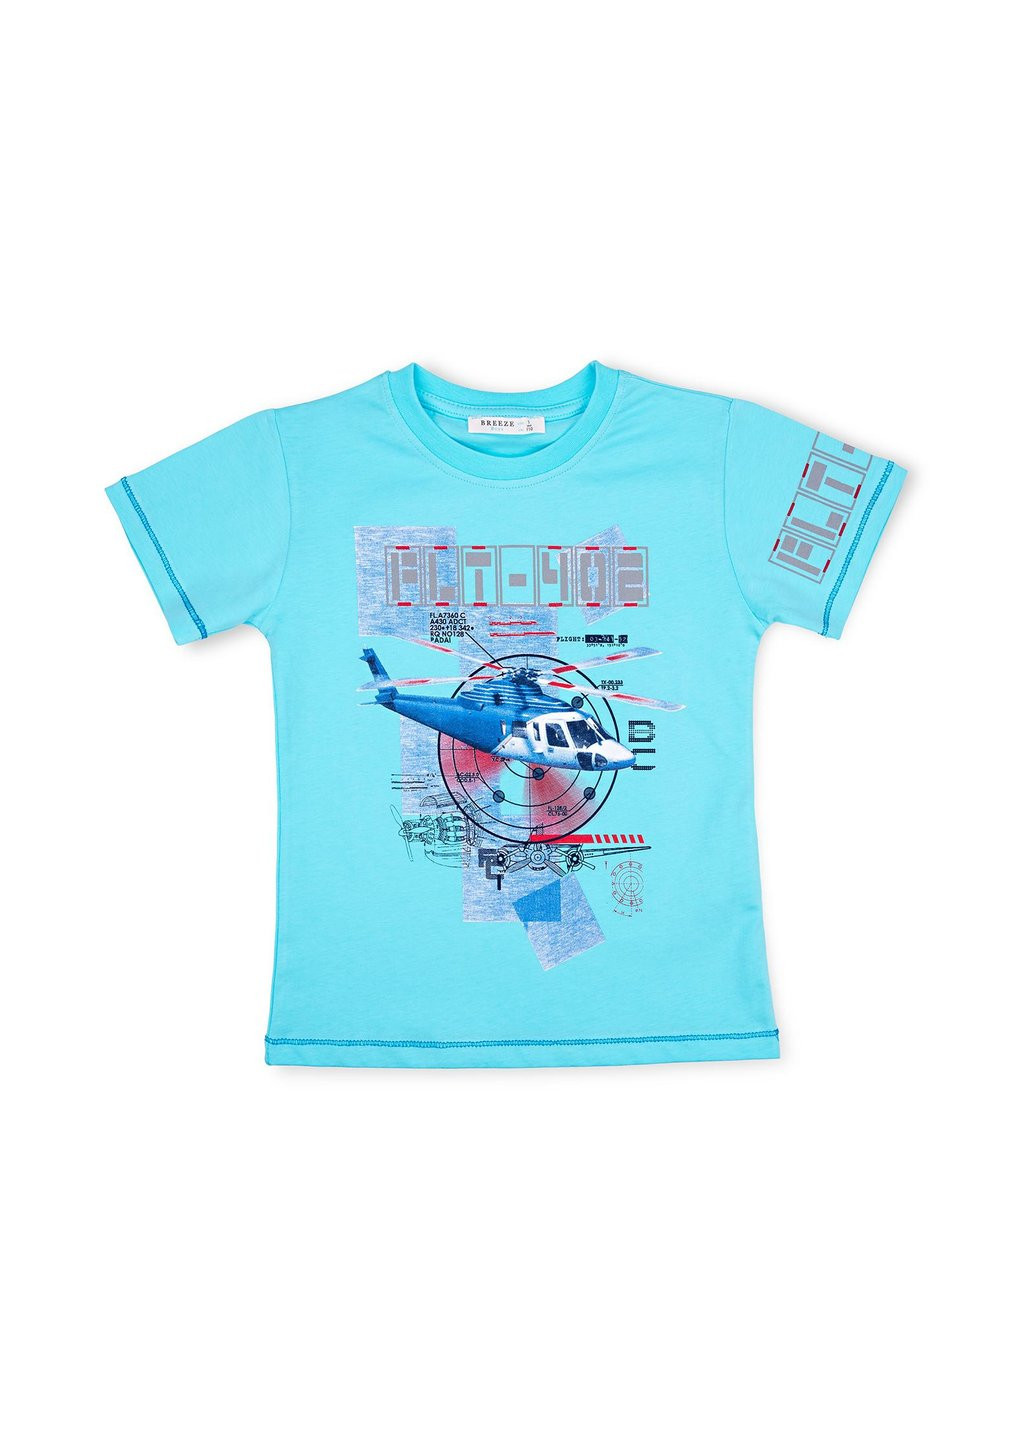 Блакитний літній набір дитячого одягу з вертольотом (10970-134b-blue) Breeze